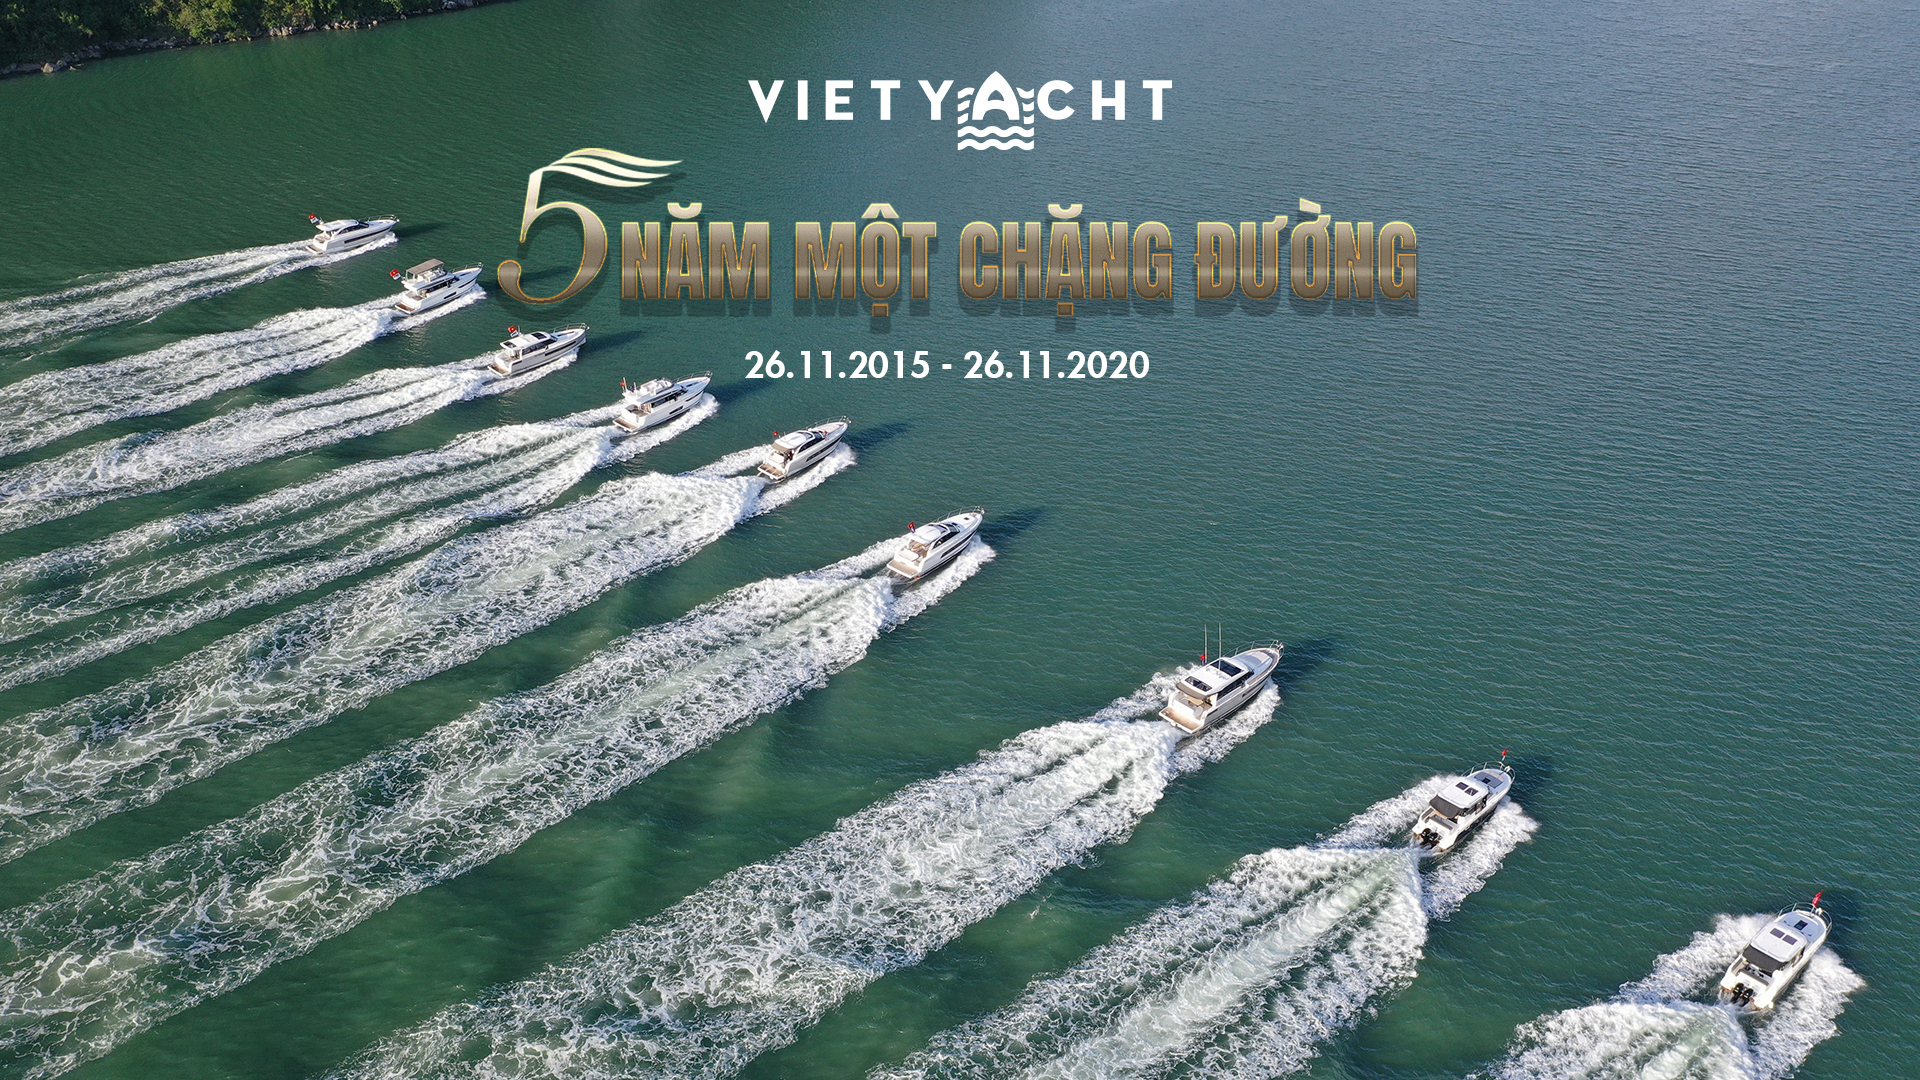 Ngày 26/11/2020, Vietyacht – Du Thuyền Việt đã tổ chức lễ tri ân Vietyacht – 5 Năm Một Chặng Đường kỉ niệm 5 năm thành lập (26/11/2015 – 26/11/2020).